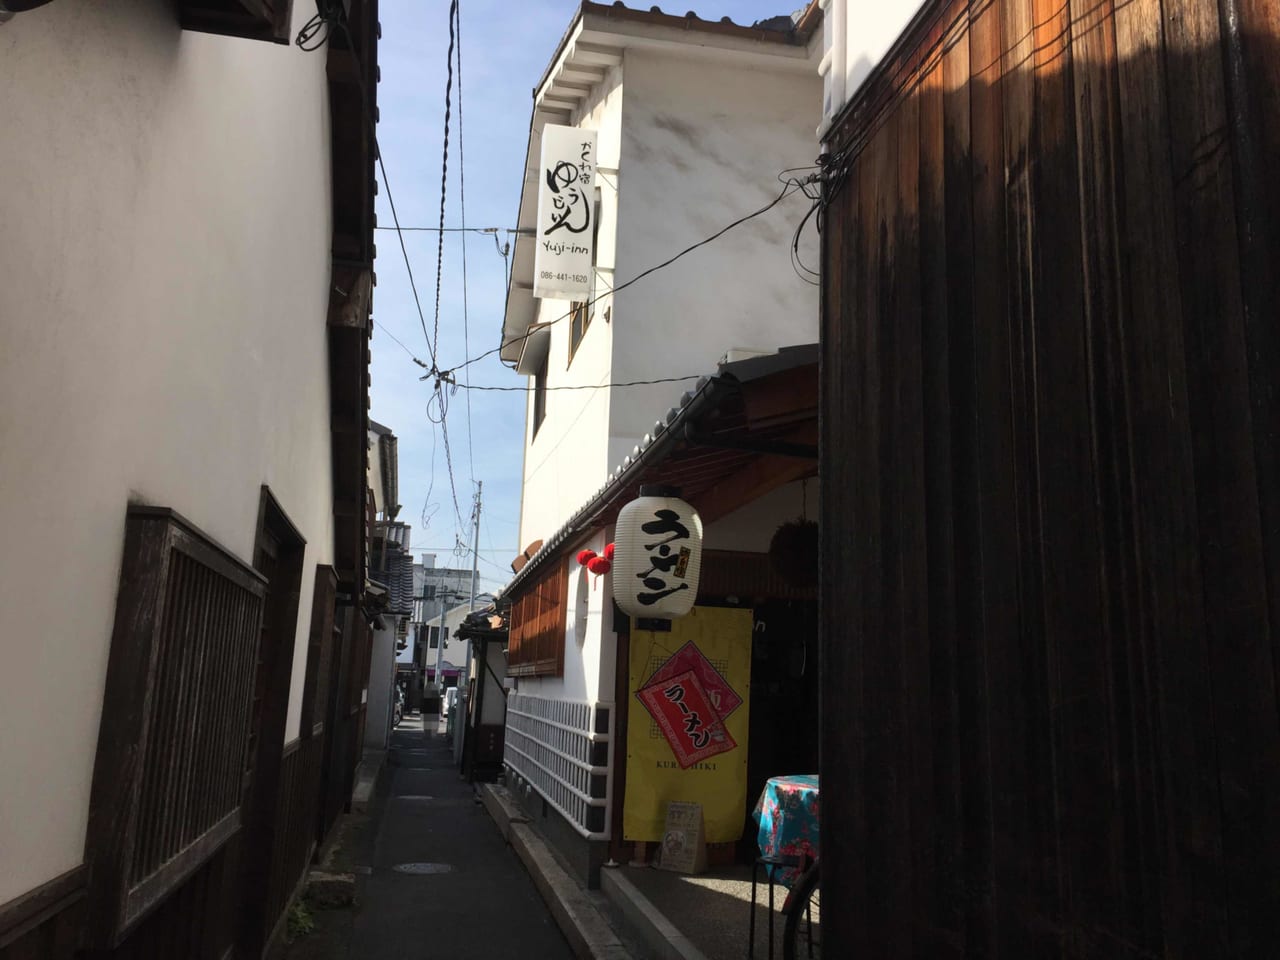 倉敷市 美観地区の路地裏にある Yuji Inn ゆうじいん で 台湾を味わうランチを食べてきました 号外net 倉敷市